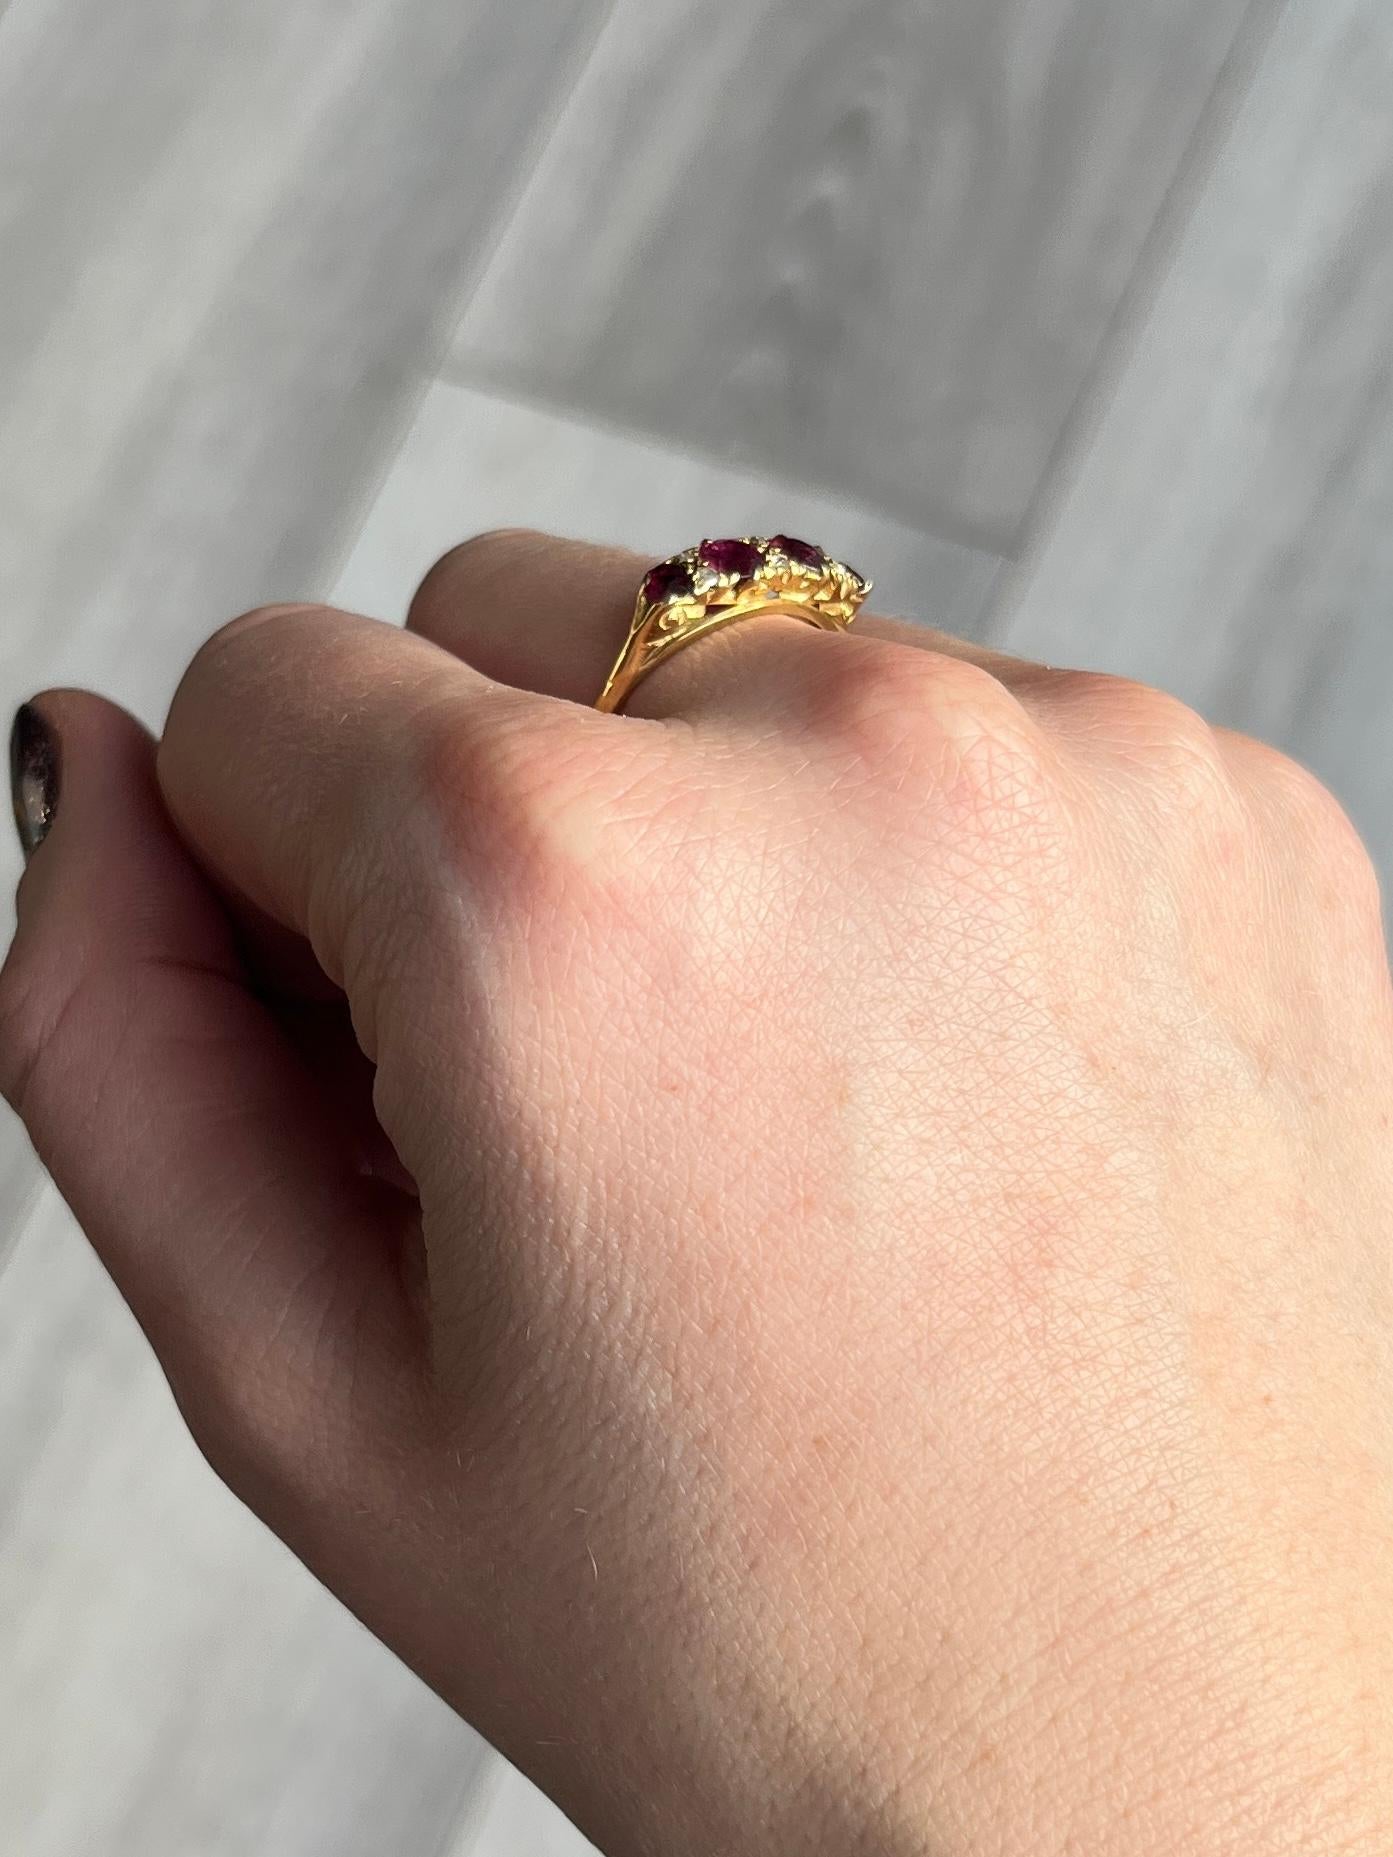 In diesem glänzenden Ring aus 18 Karat Gold sind vier Rubine mit insgesamt 80 Pfund und sechs Diamanten im Rosenschliff gefasst. Die Steine sind bündig in die dekorative Schneckenfassung eingesetzt. 

Ringgröße: O 1/2 oder 7 1/2 
Kopfbreite: